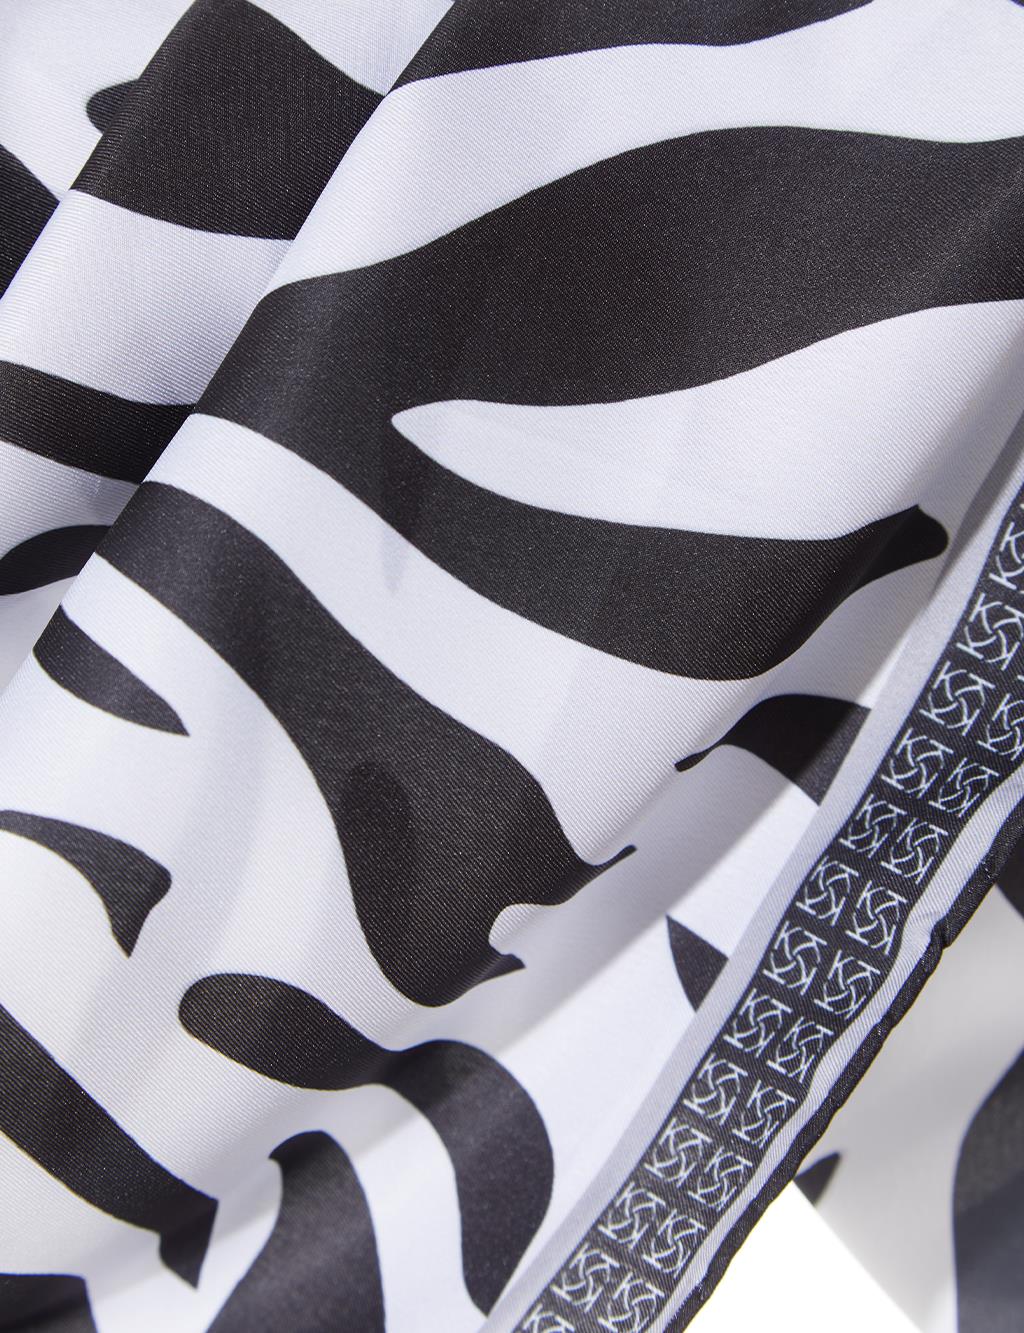 Monogram Çerçeveli Zebra Desen Eşarp Siyah-Beyaz